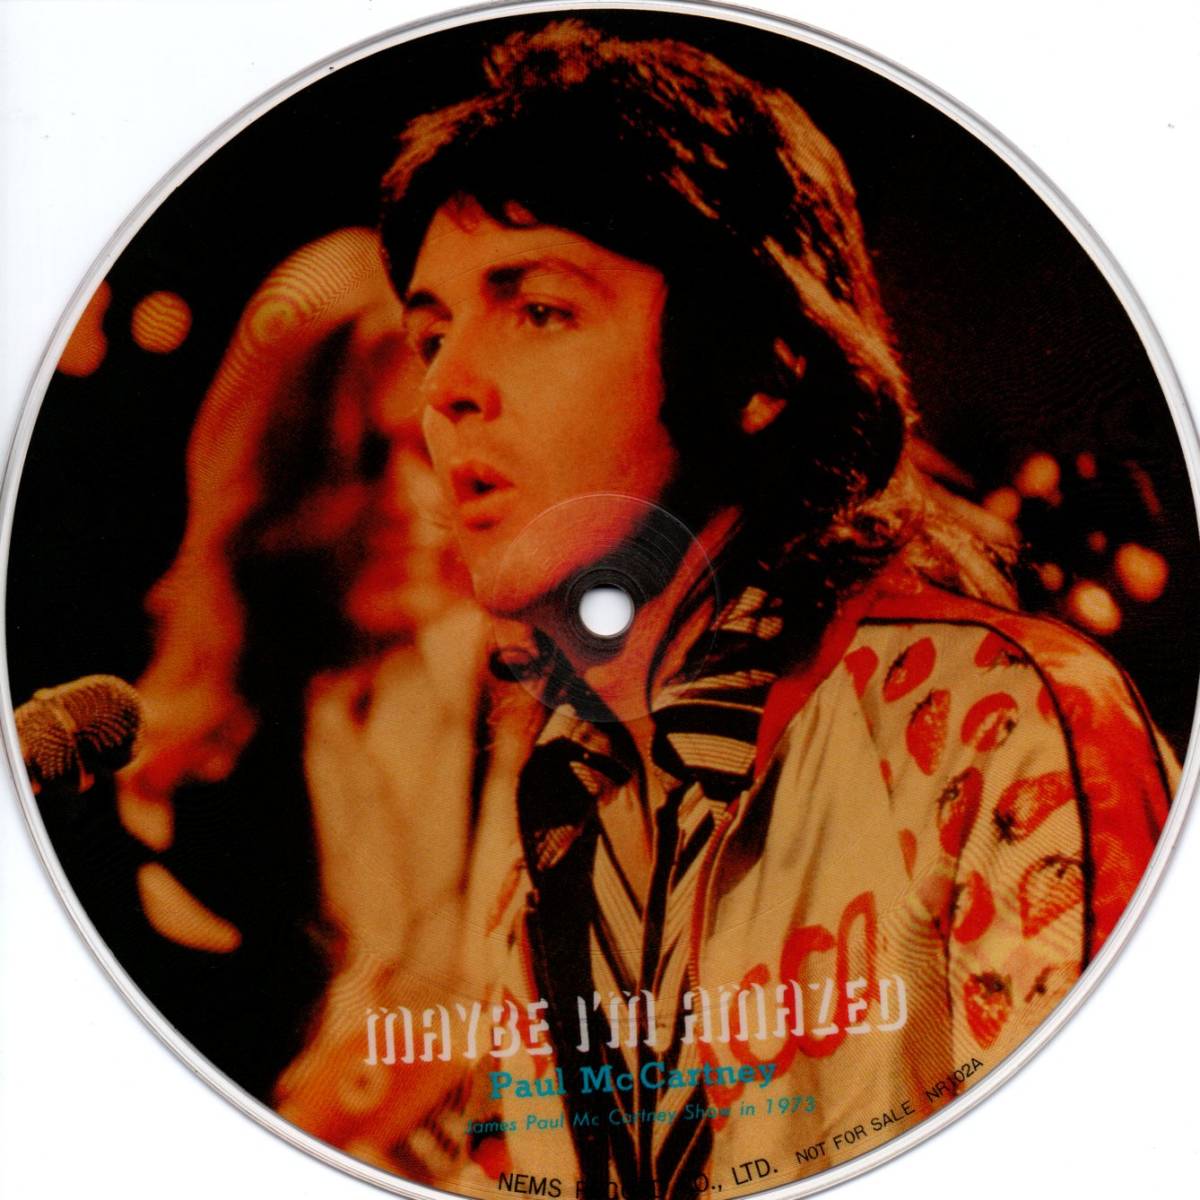 Paul McCartney 「Maybe I'm Amazed」/ John Lennon 「Imagine」ピクチャー盤EPレコード_画像1